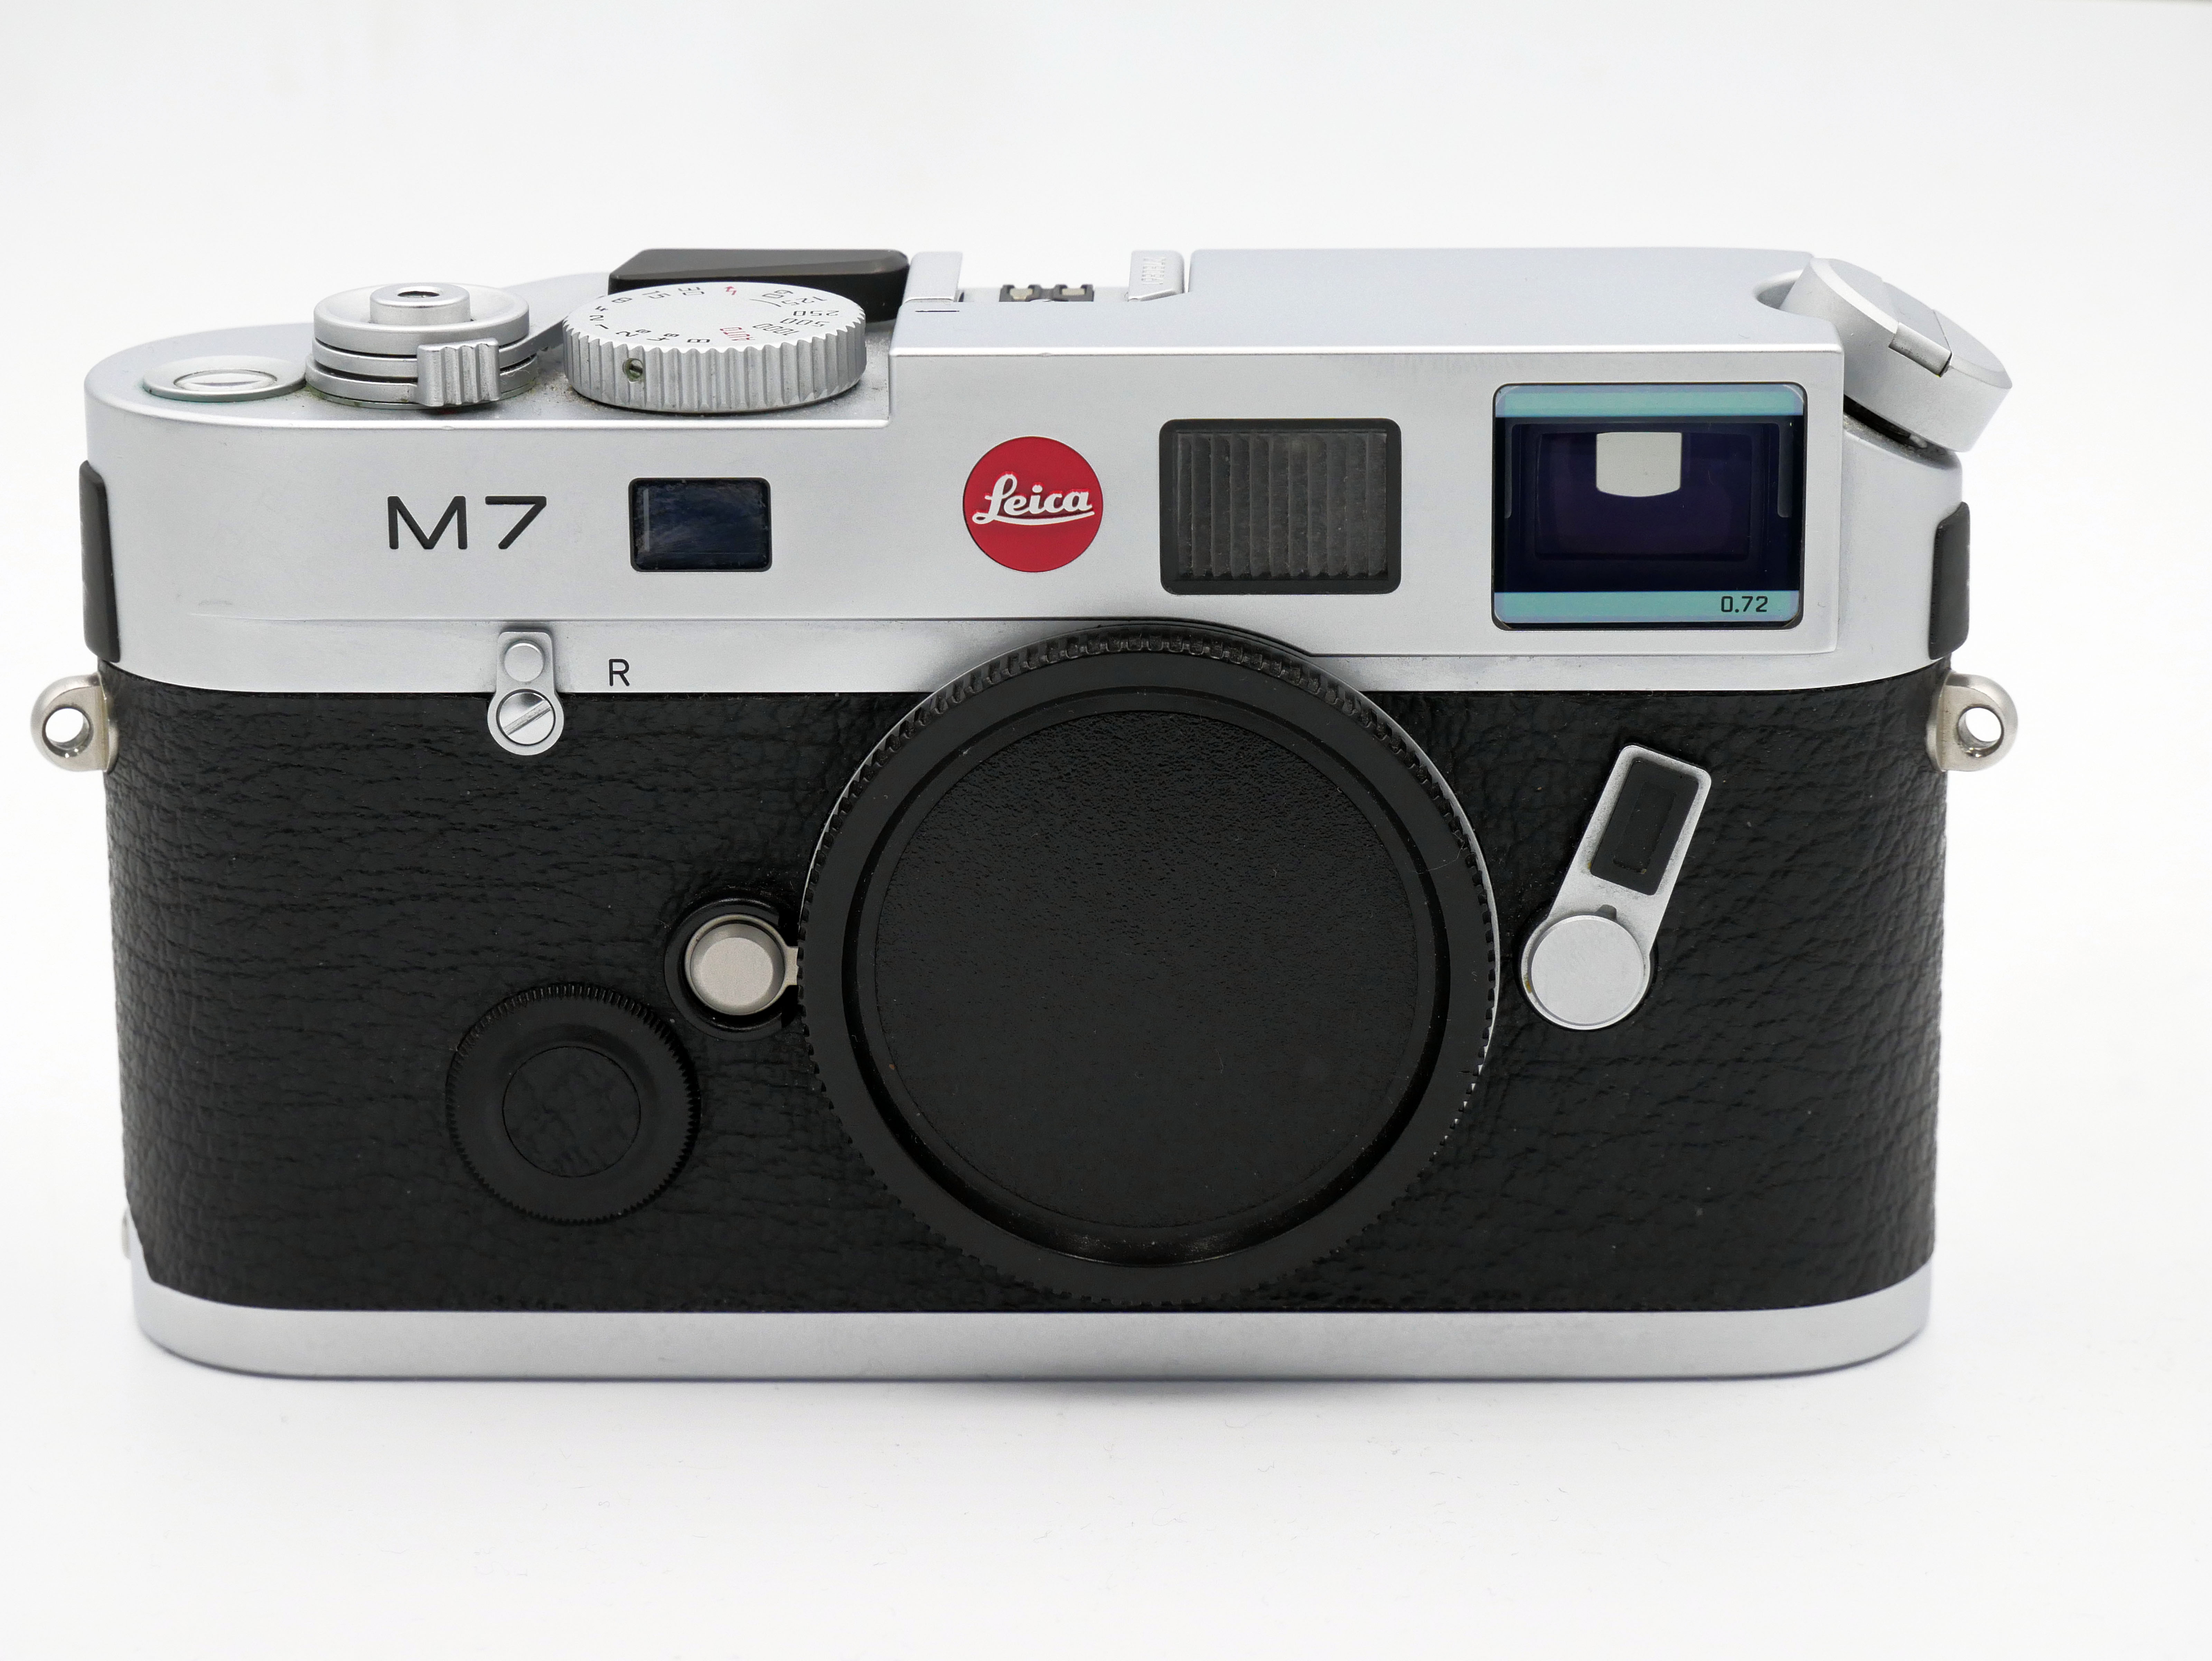 徕卡 Leica M7 TTL 0.72 银色机身